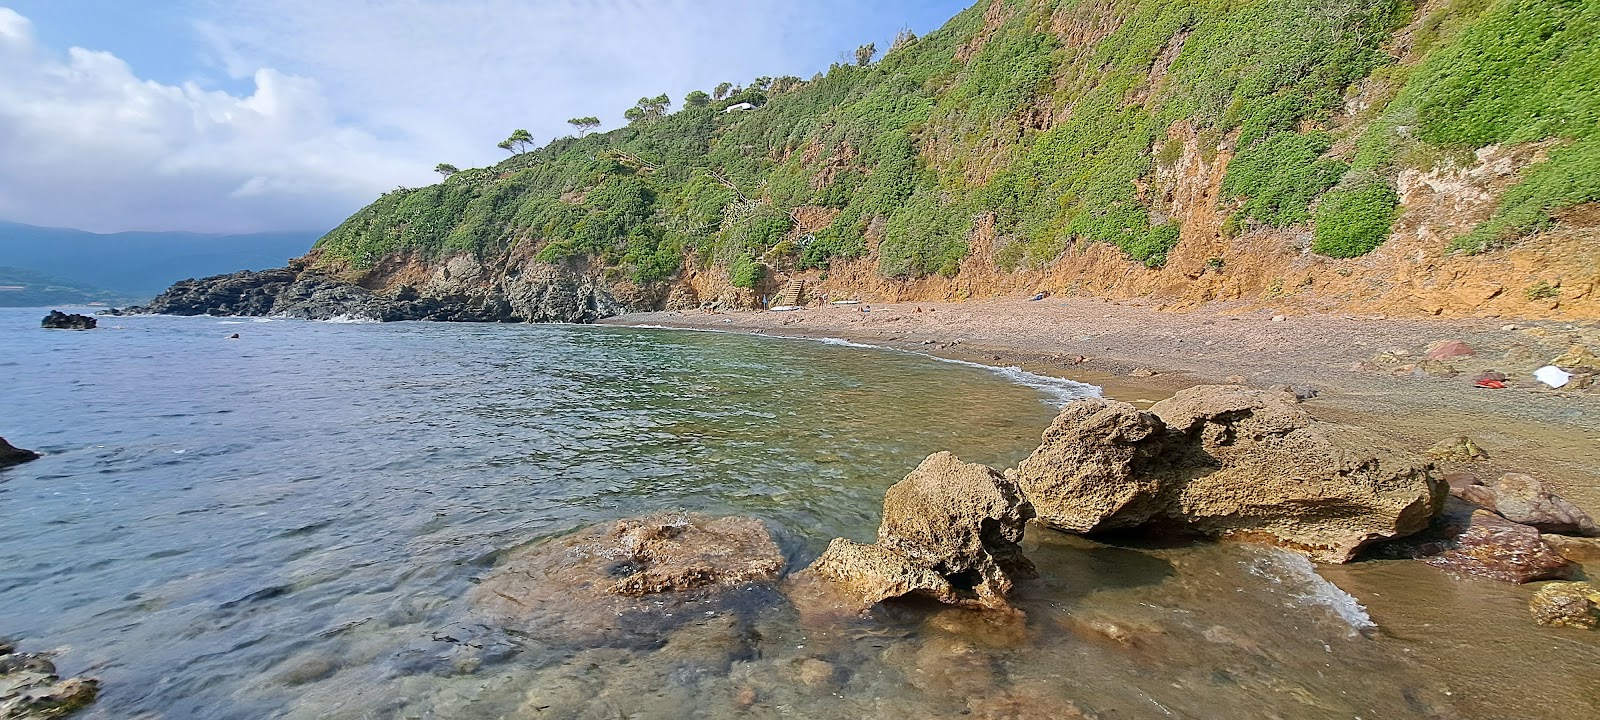 Photo de Spiaggia Canata situé dans une zone naturelle